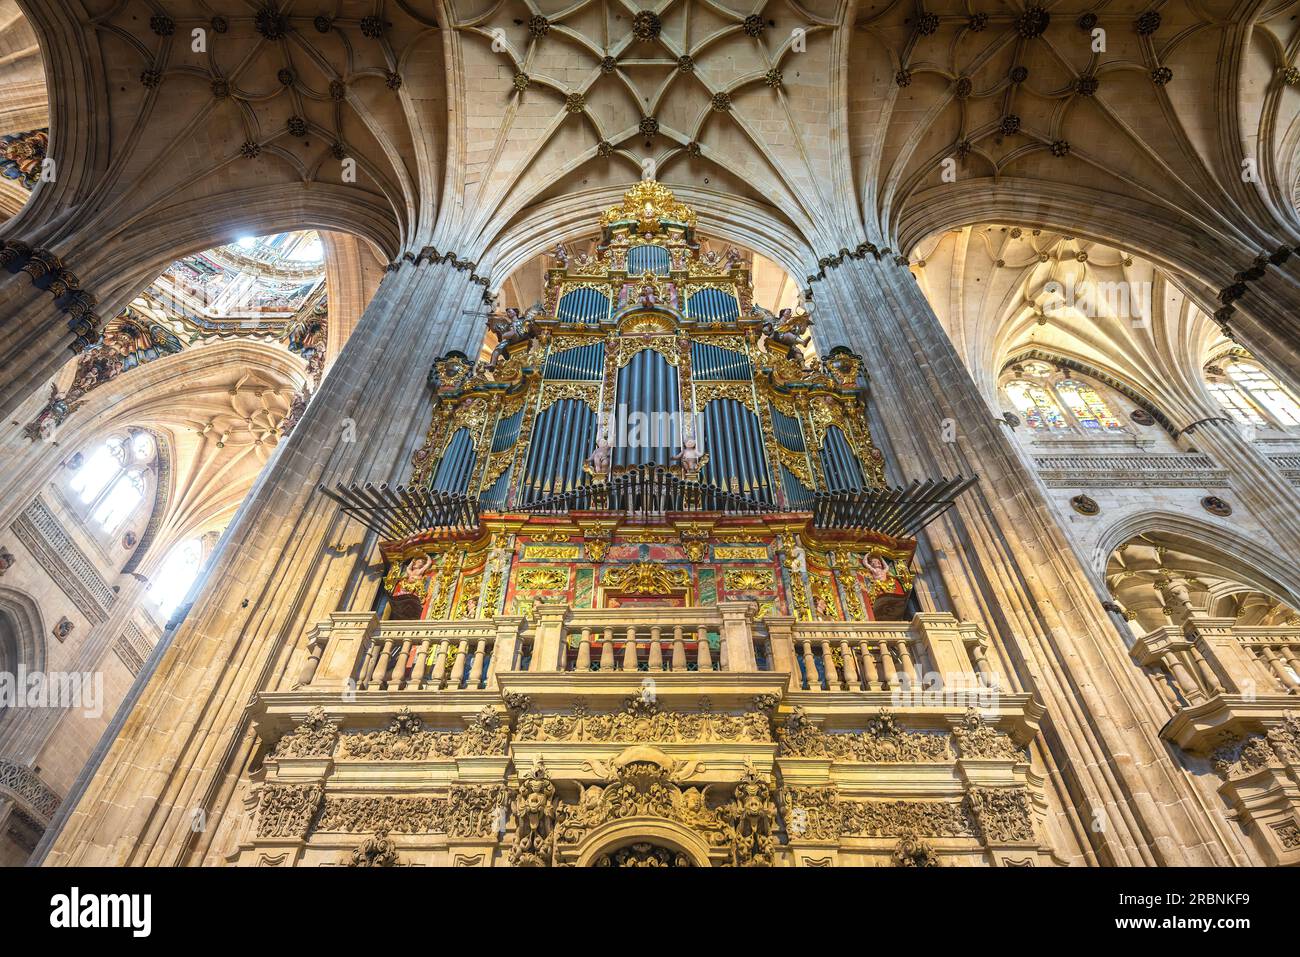 Renaissance-Orgel im Inneren der neuen Kathedrale von Salamanca - Salamanca, Spanien Stockfoto